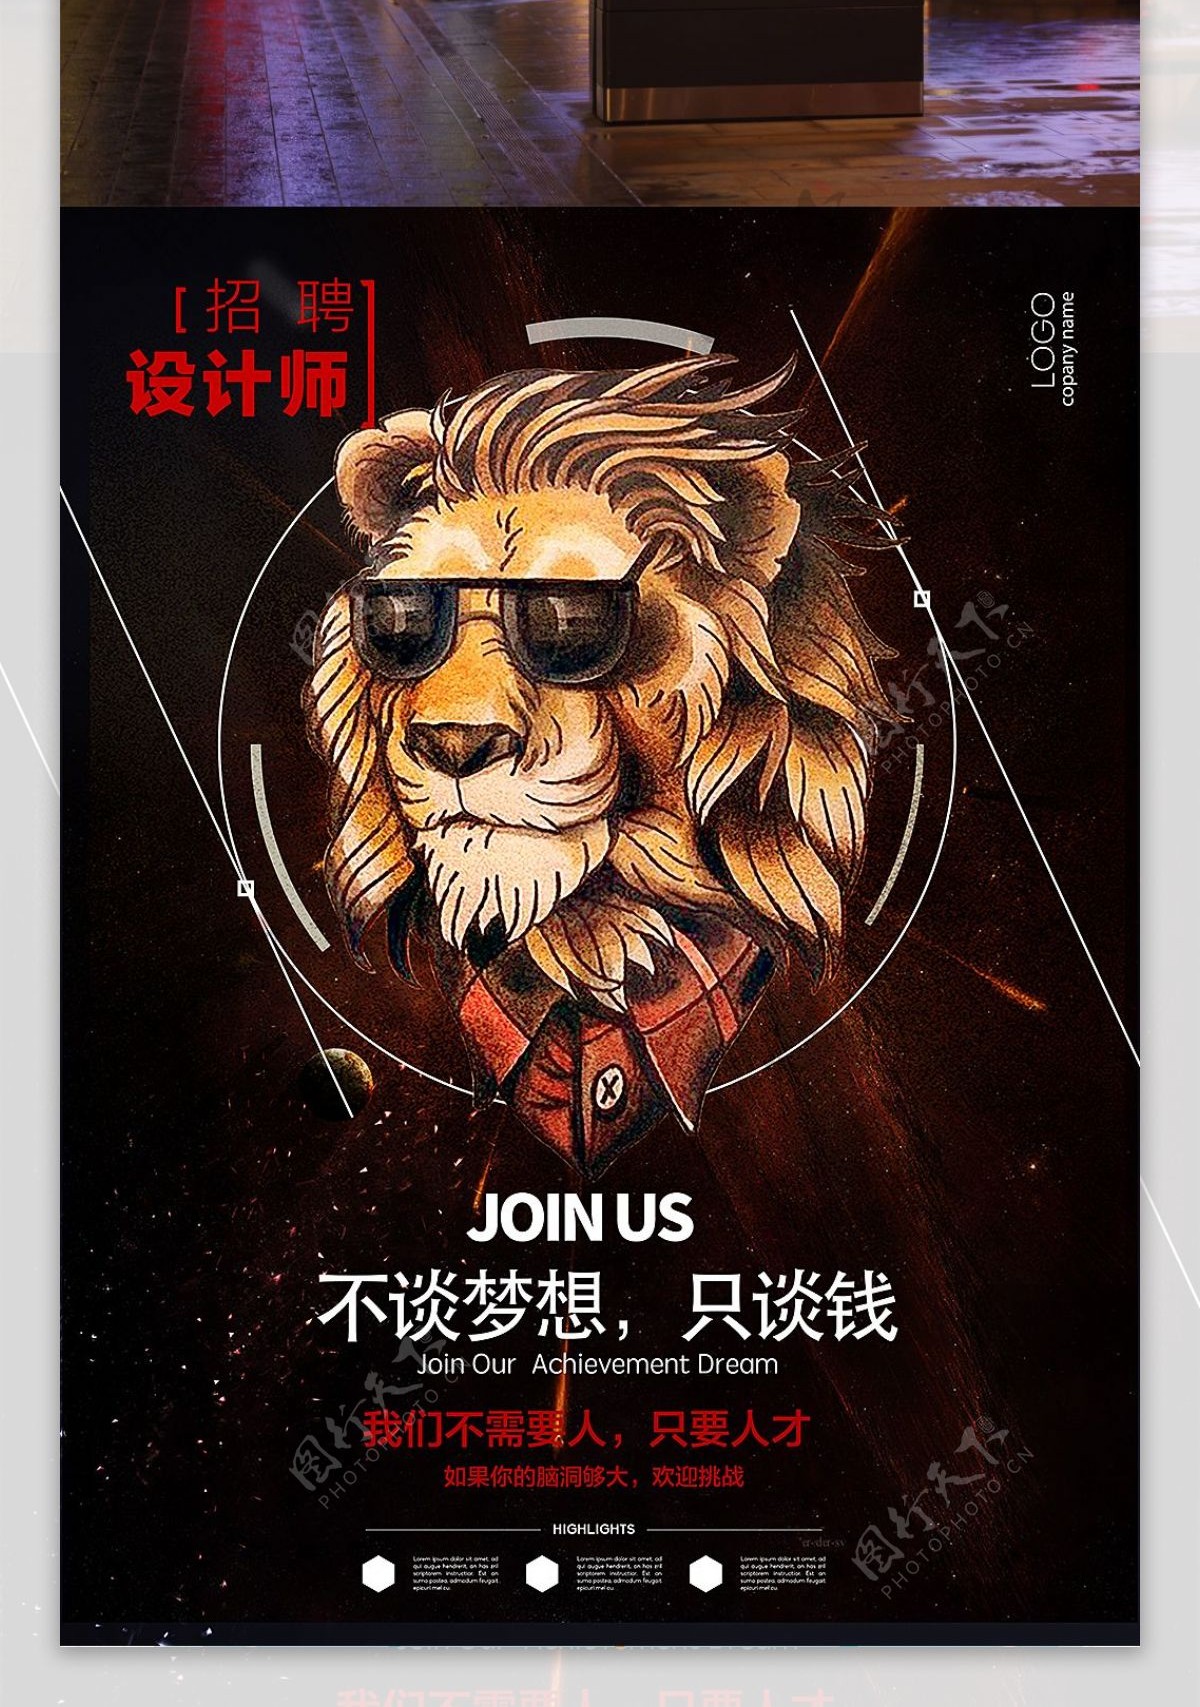 创意狮子头设计狮设计师招聘海报设计